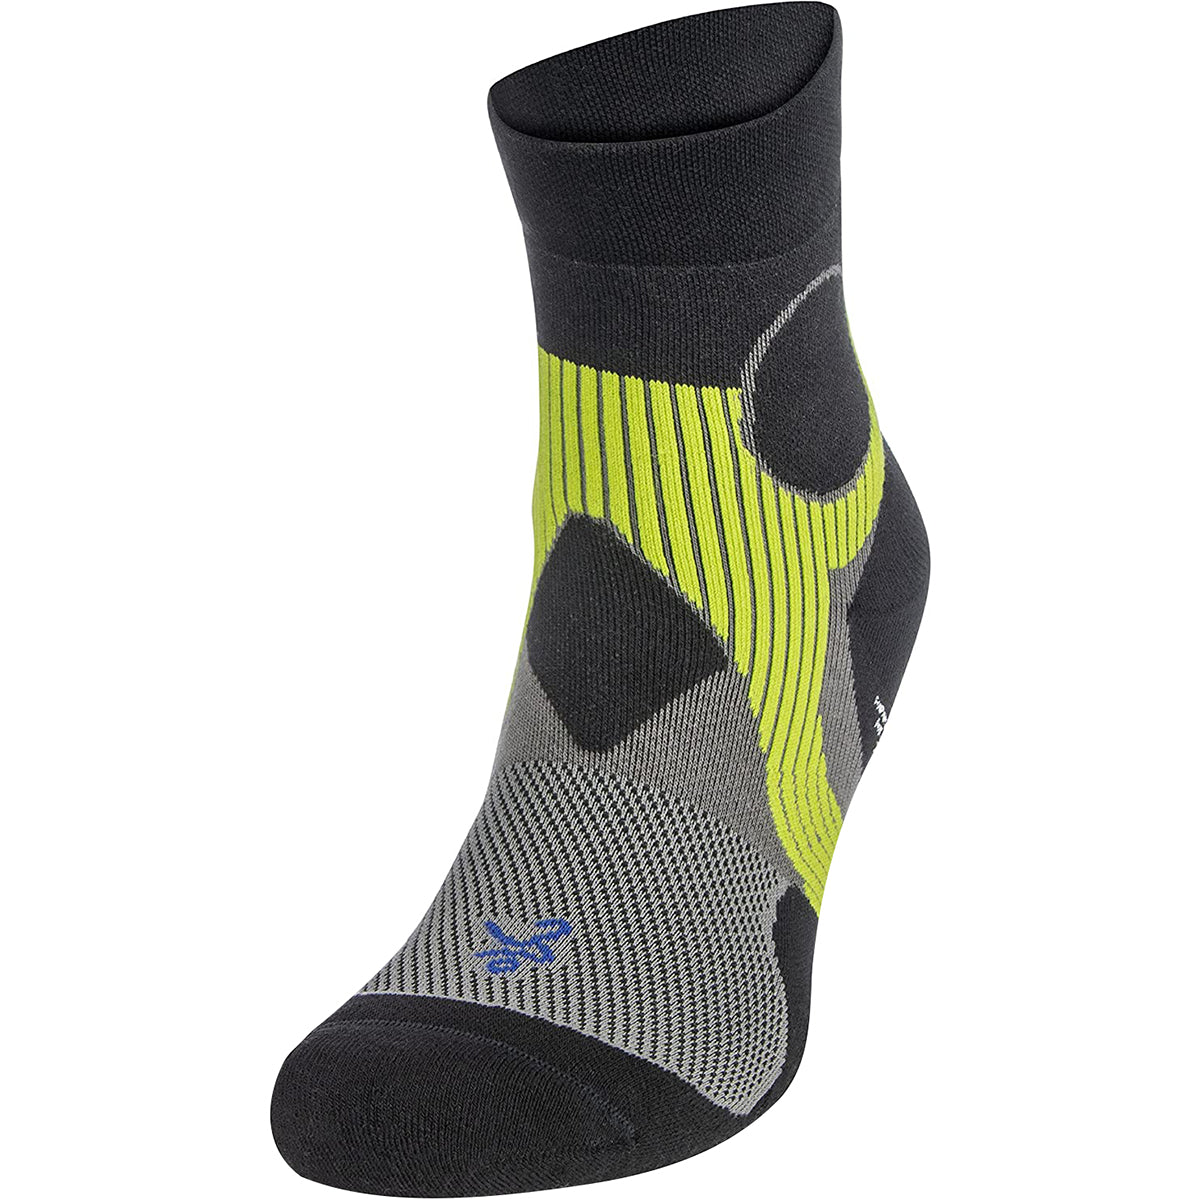 Balega Support Quarter Length Running Socks - Light Gray/Black Balega